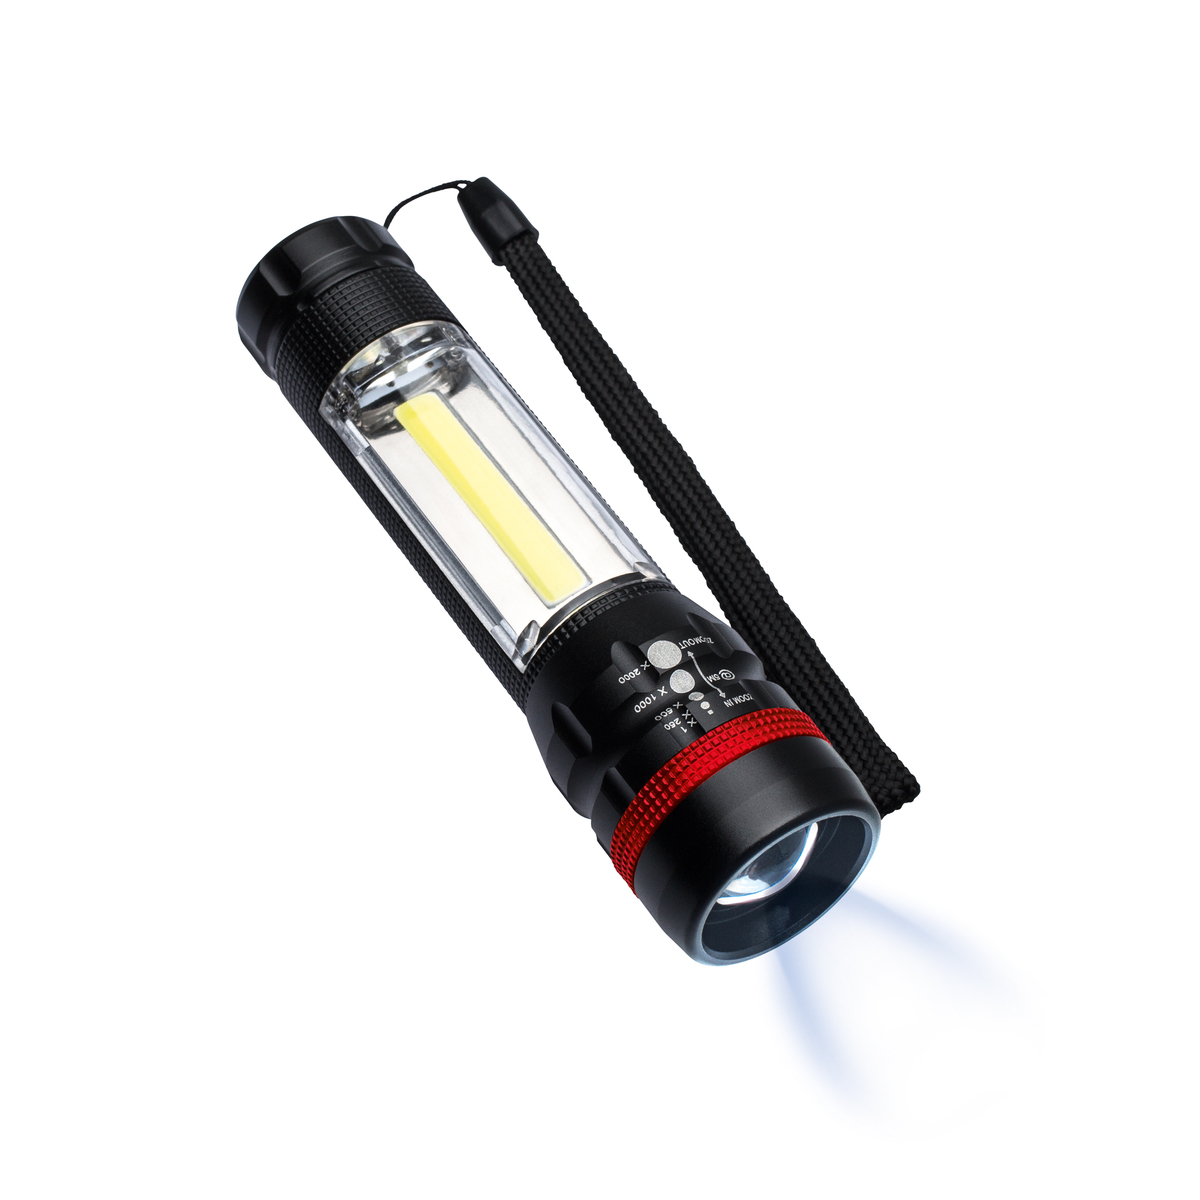 LM Multifunktions-Taschenlampe REFLECTS-BOGRA schwarz